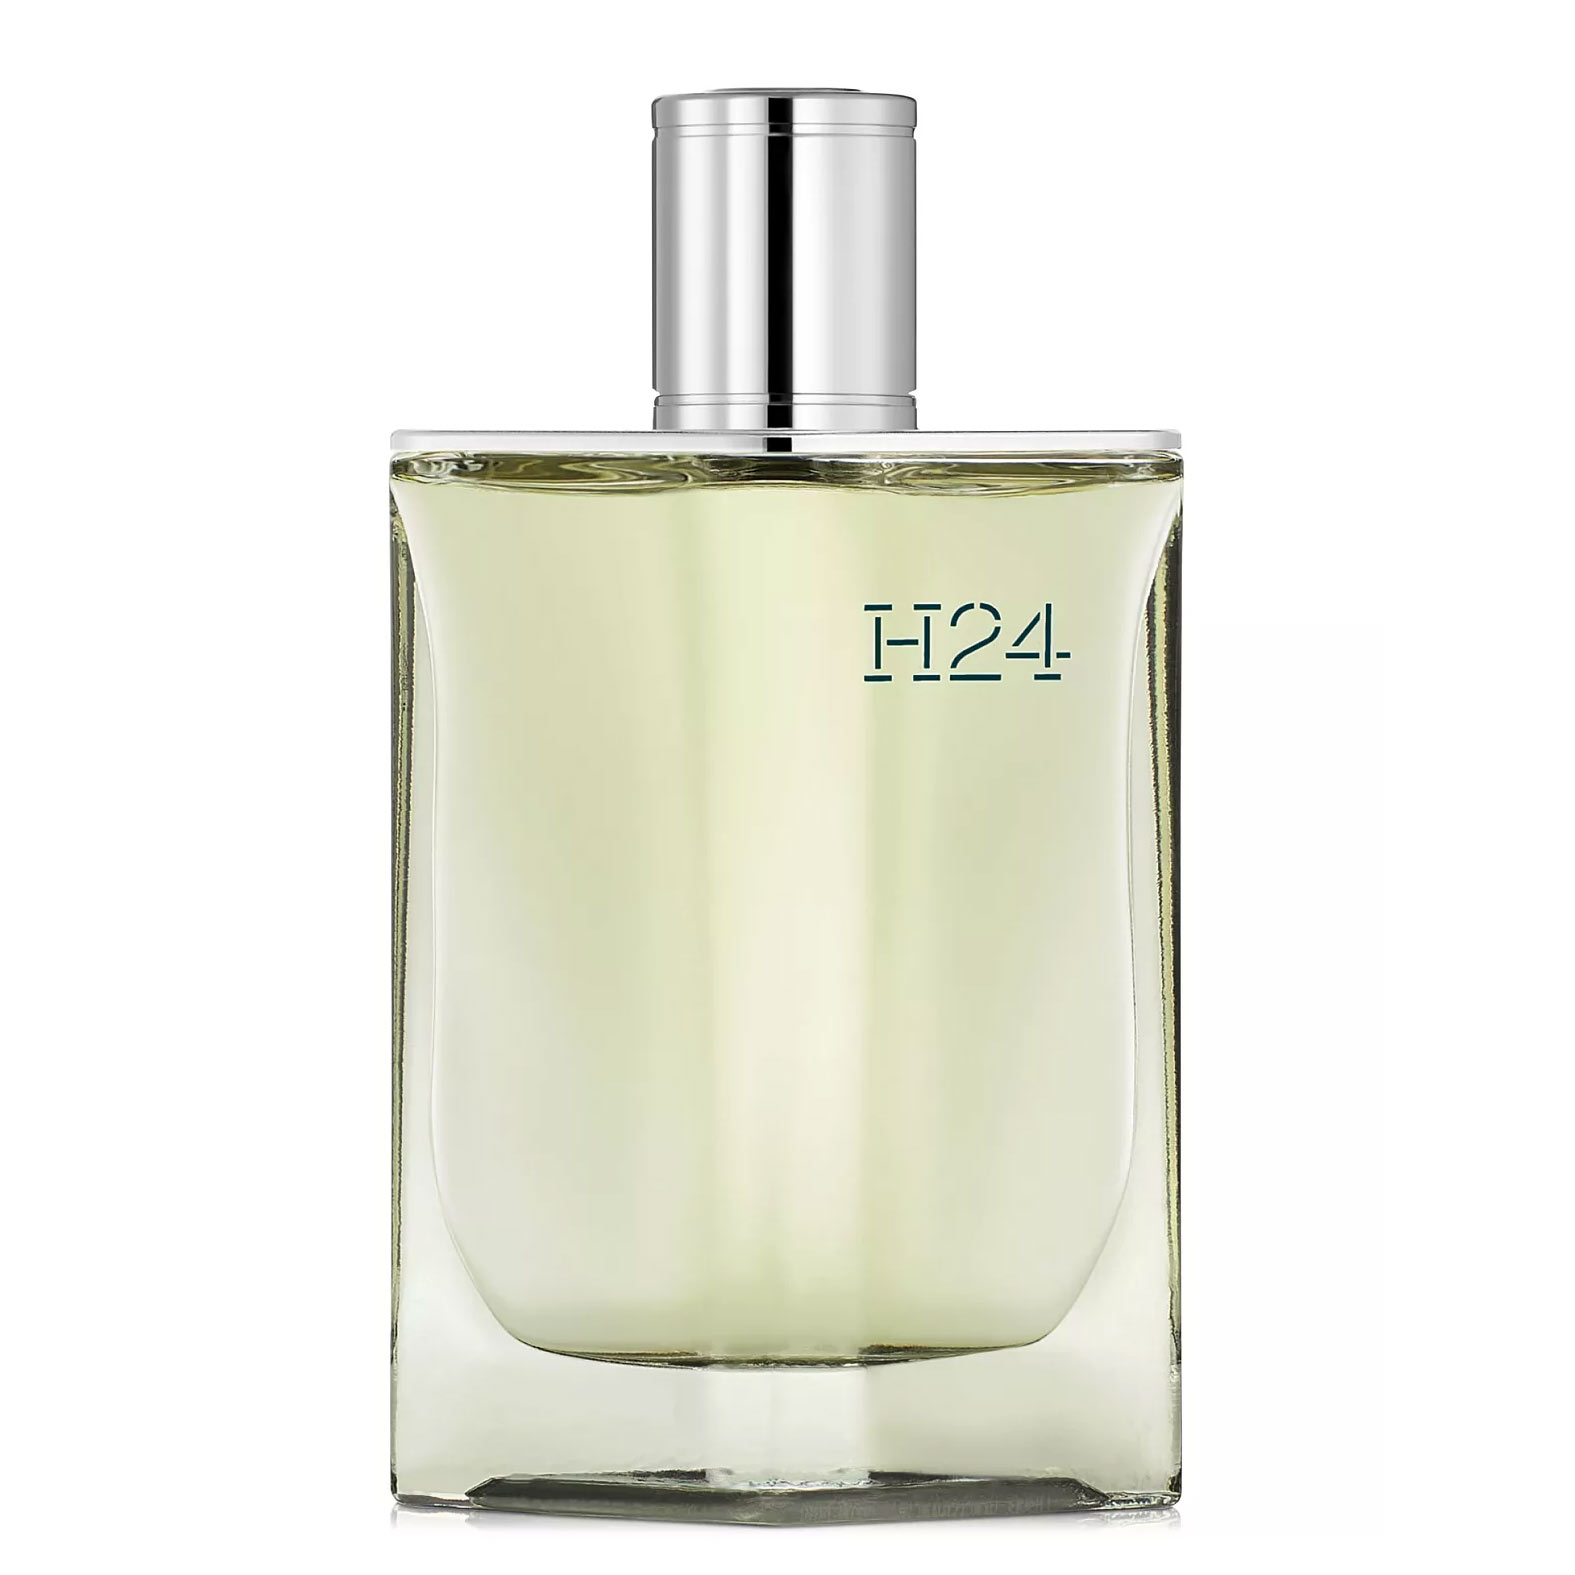 H24 Eau de Parfum Hermes Image